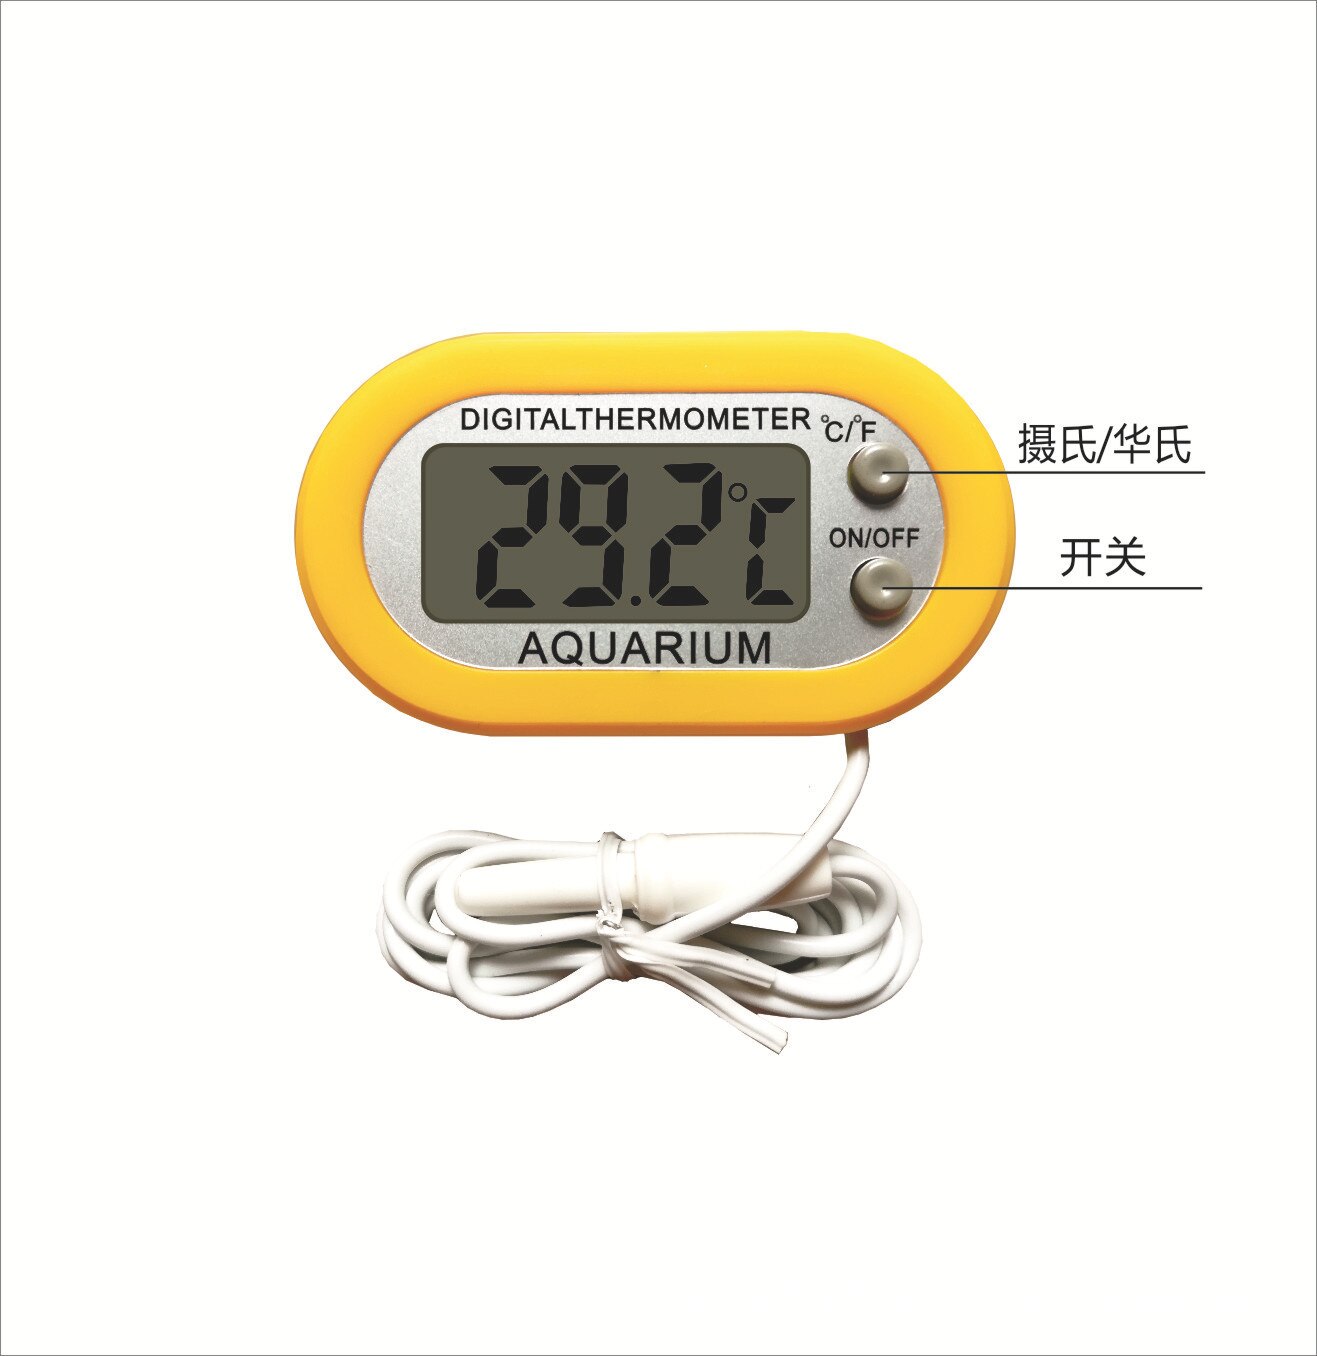 Groot Scherm Aquarium Elektronische Digitale Thermometer Fy-99 Met Nummers Elektronische Aquarium Thermometer Een Grote Hoeveelheid